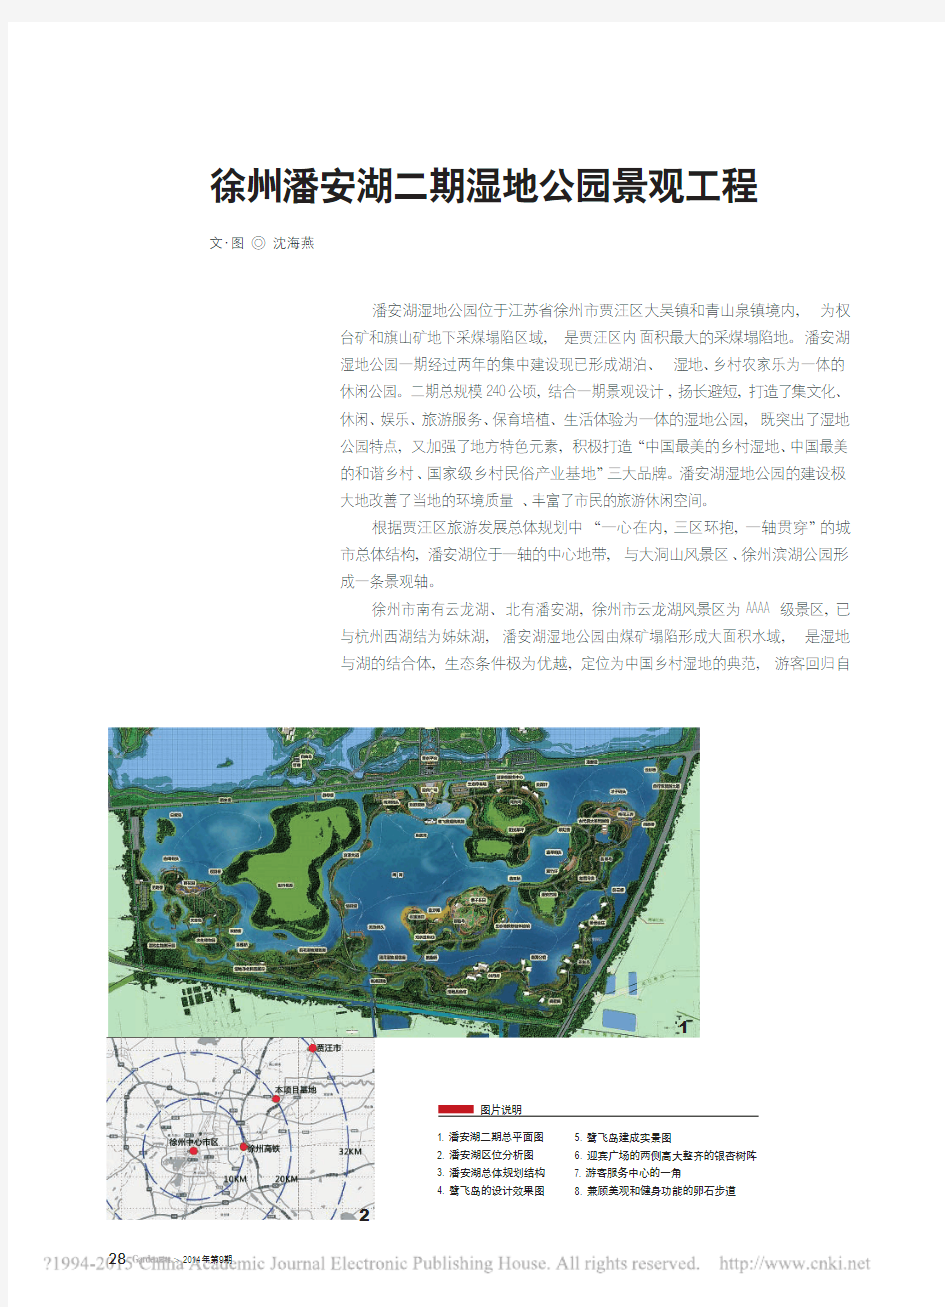 徐州潘安湖二期湿地公园景观工程_沈海燕